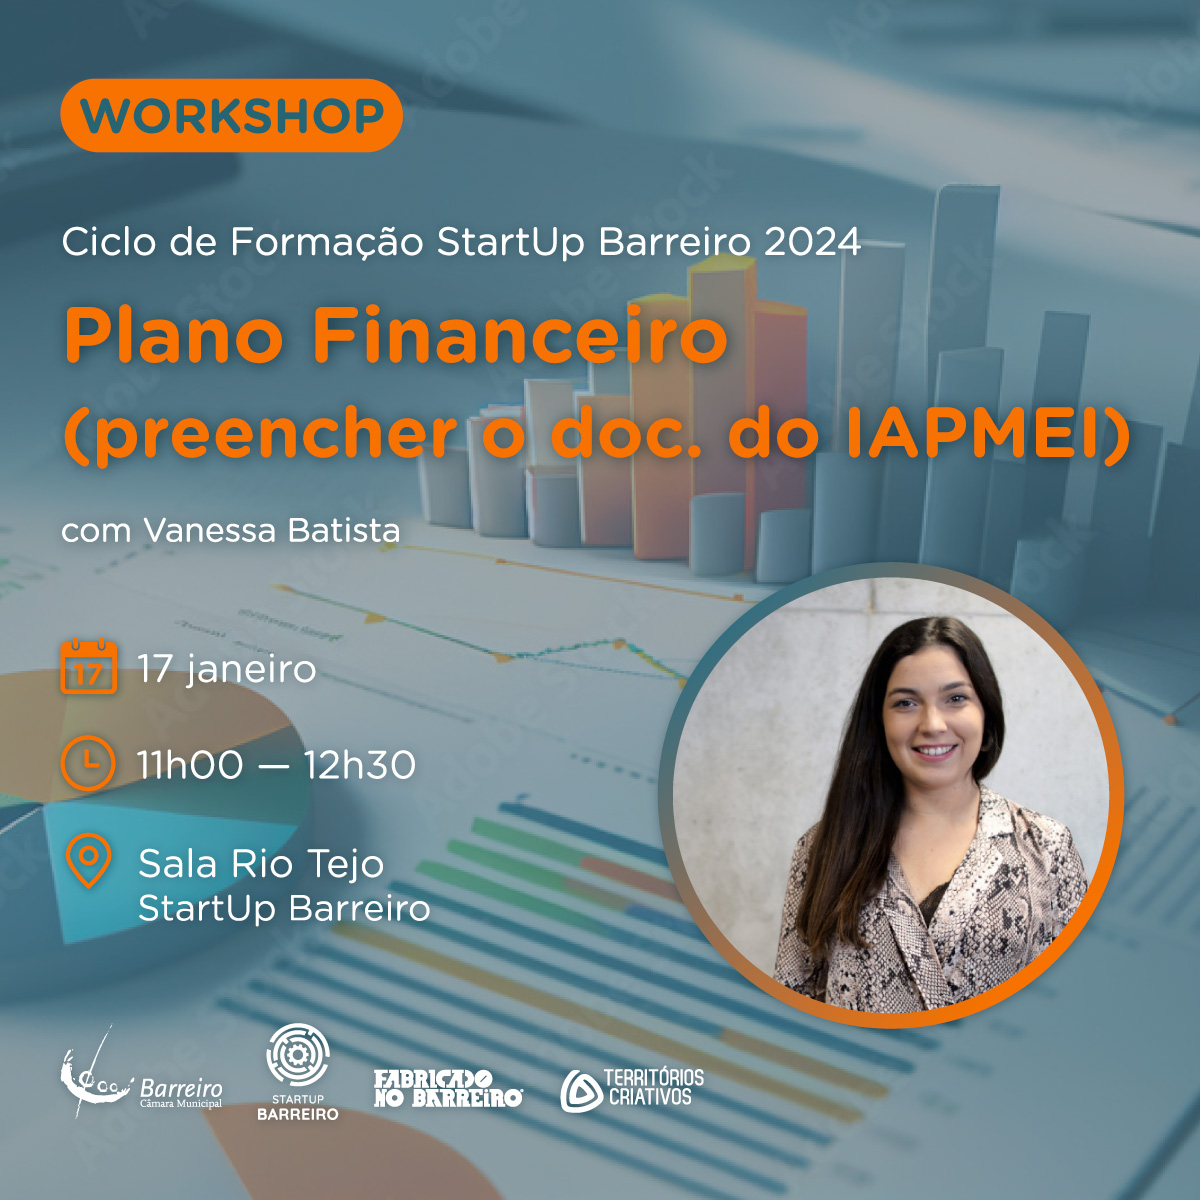 Cartaz do workshop "Plano Financeiro (preencher o doc. do IAPMEI)", com Vanessa Batista, no dia 17 de janeiro de 2024, na StartUp Barreiro